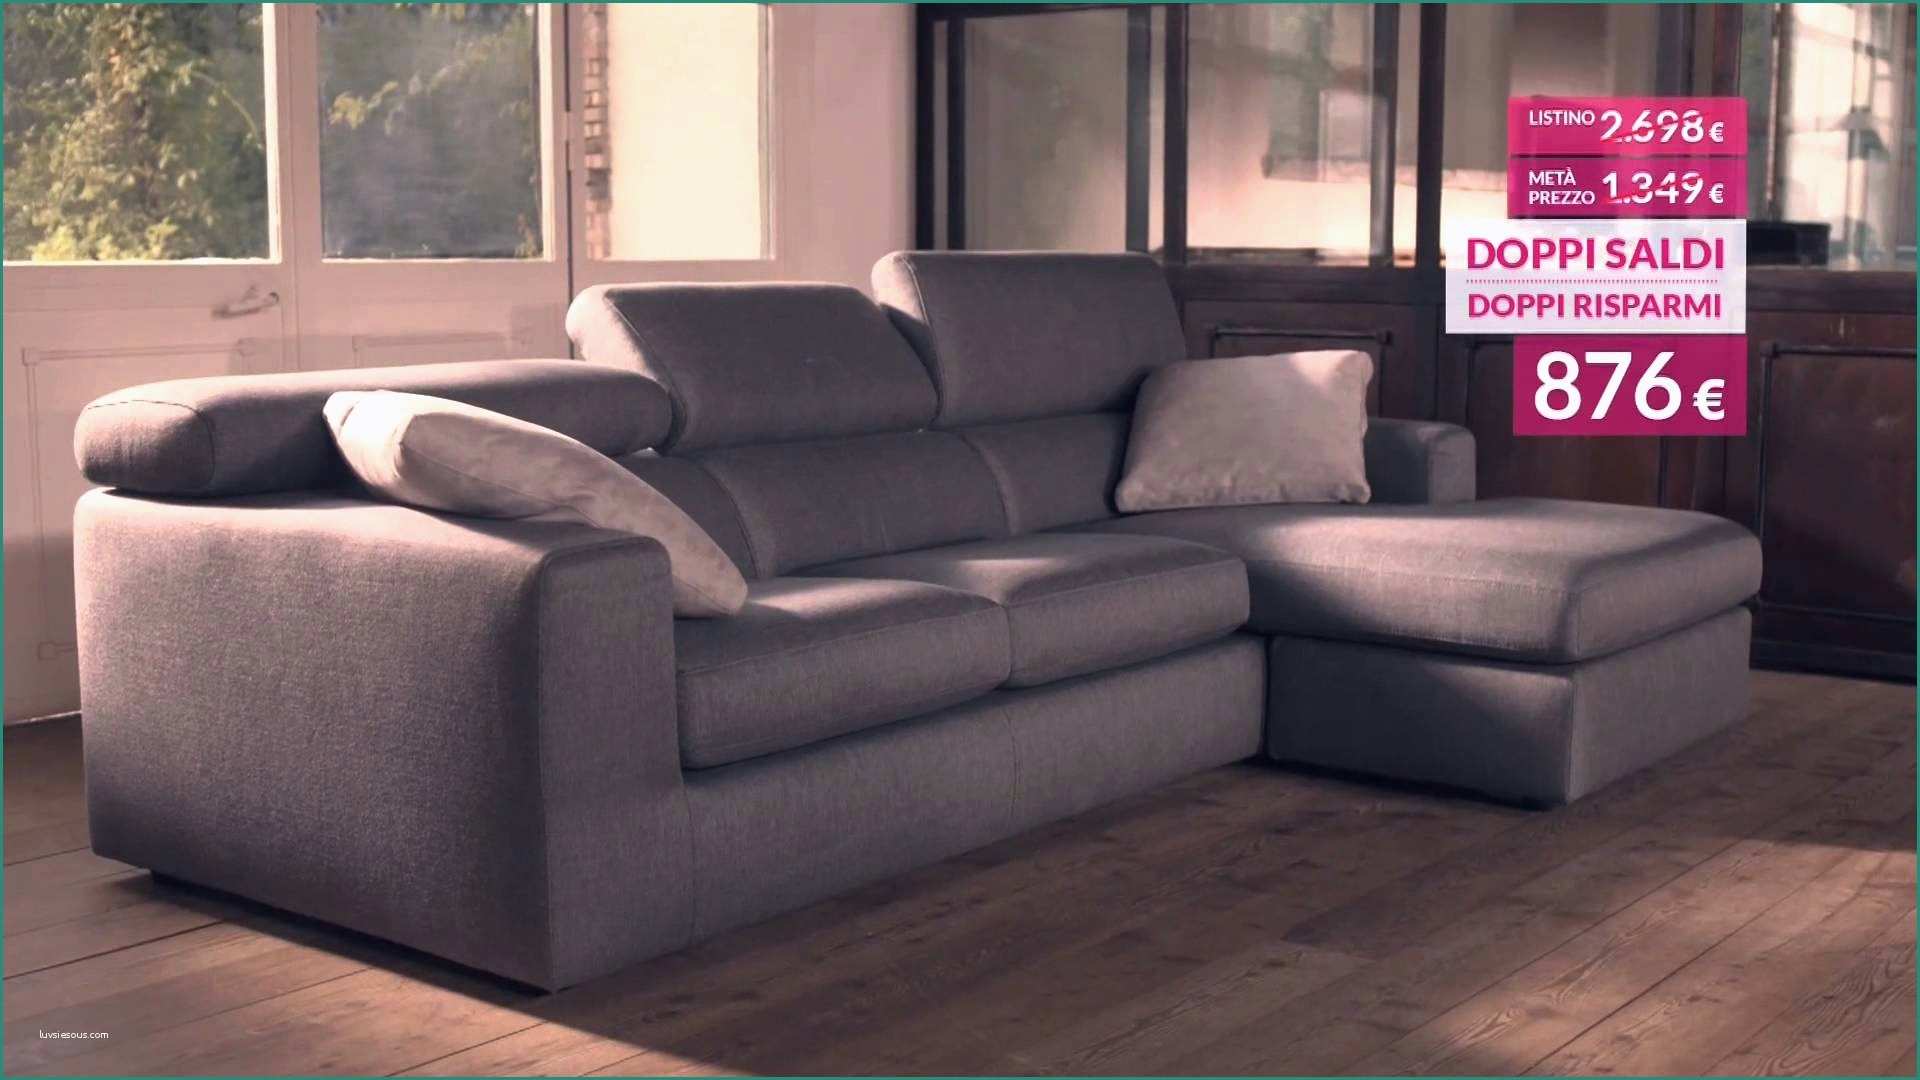 Pouf Poltrone E sofa E 30 Elegante Poltrone E sofa Catalogo